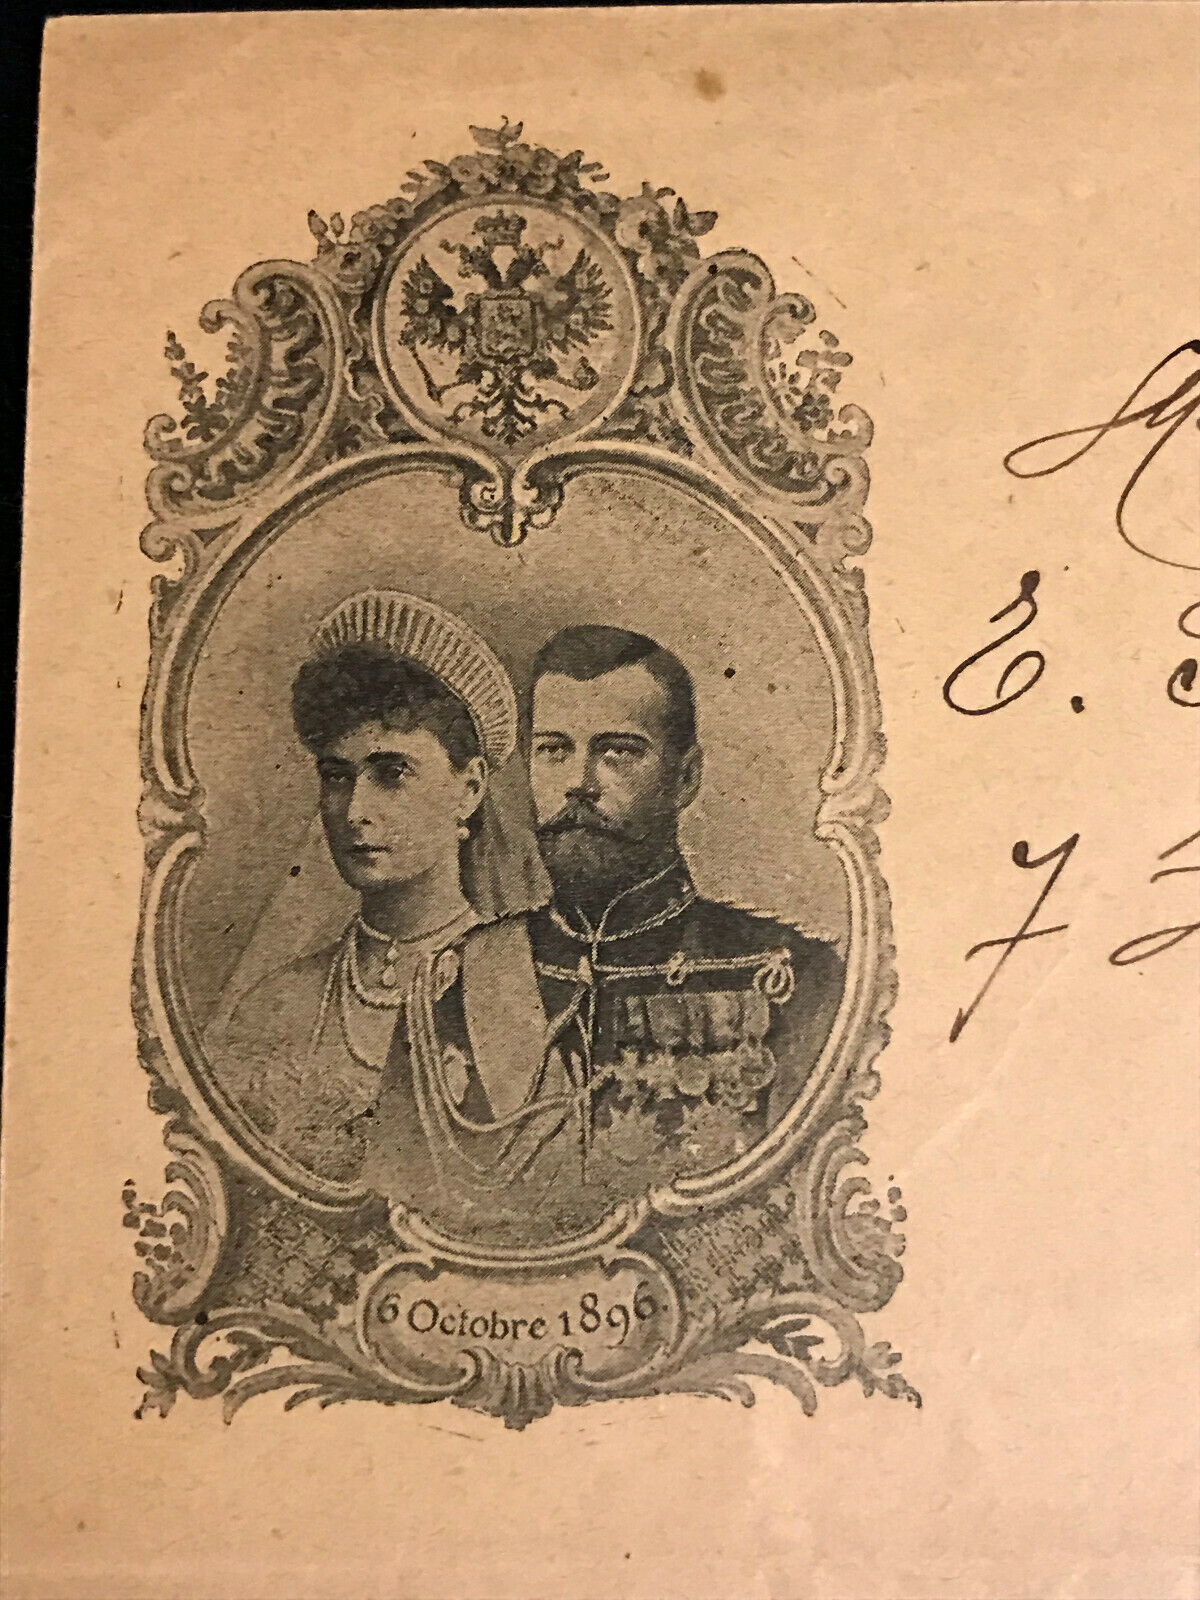 1896 ENVELOPE RUSSIAN IMPERIAL ANTIQUES COVER VISIT CZAR NICHOLAS II PARIS STAMP